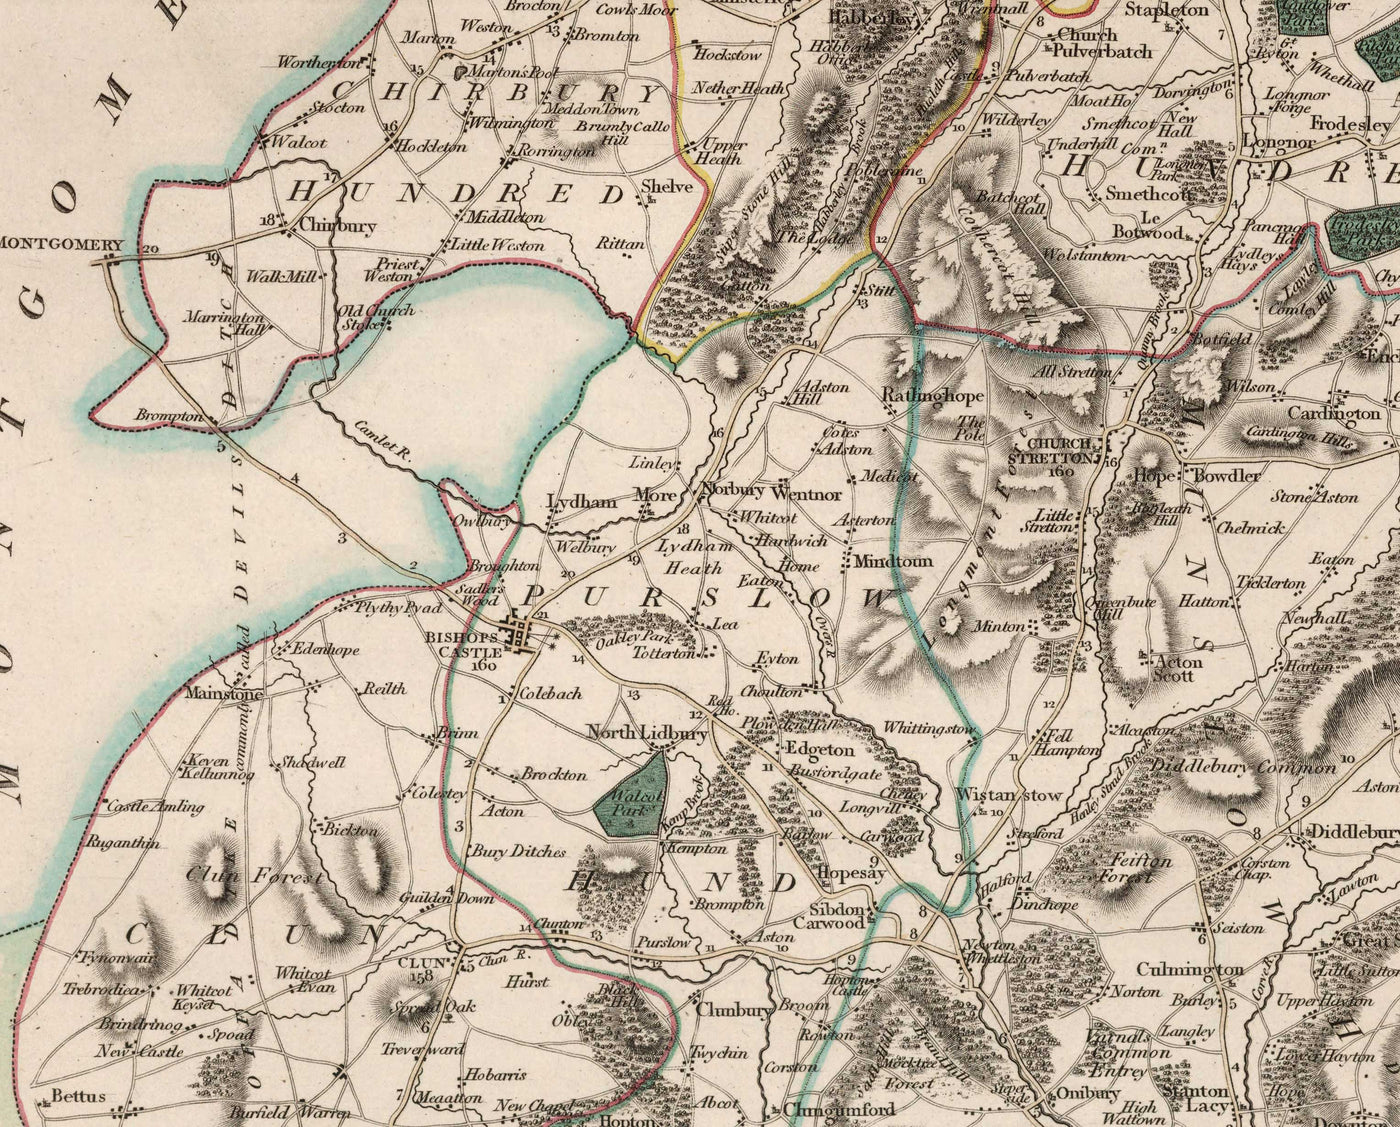 Alte Karte von Shropshire im Jahr 1805 von John Cary - Shrewsbury, Bridgnorth, Ludlow, Ironbridge, Oswestry